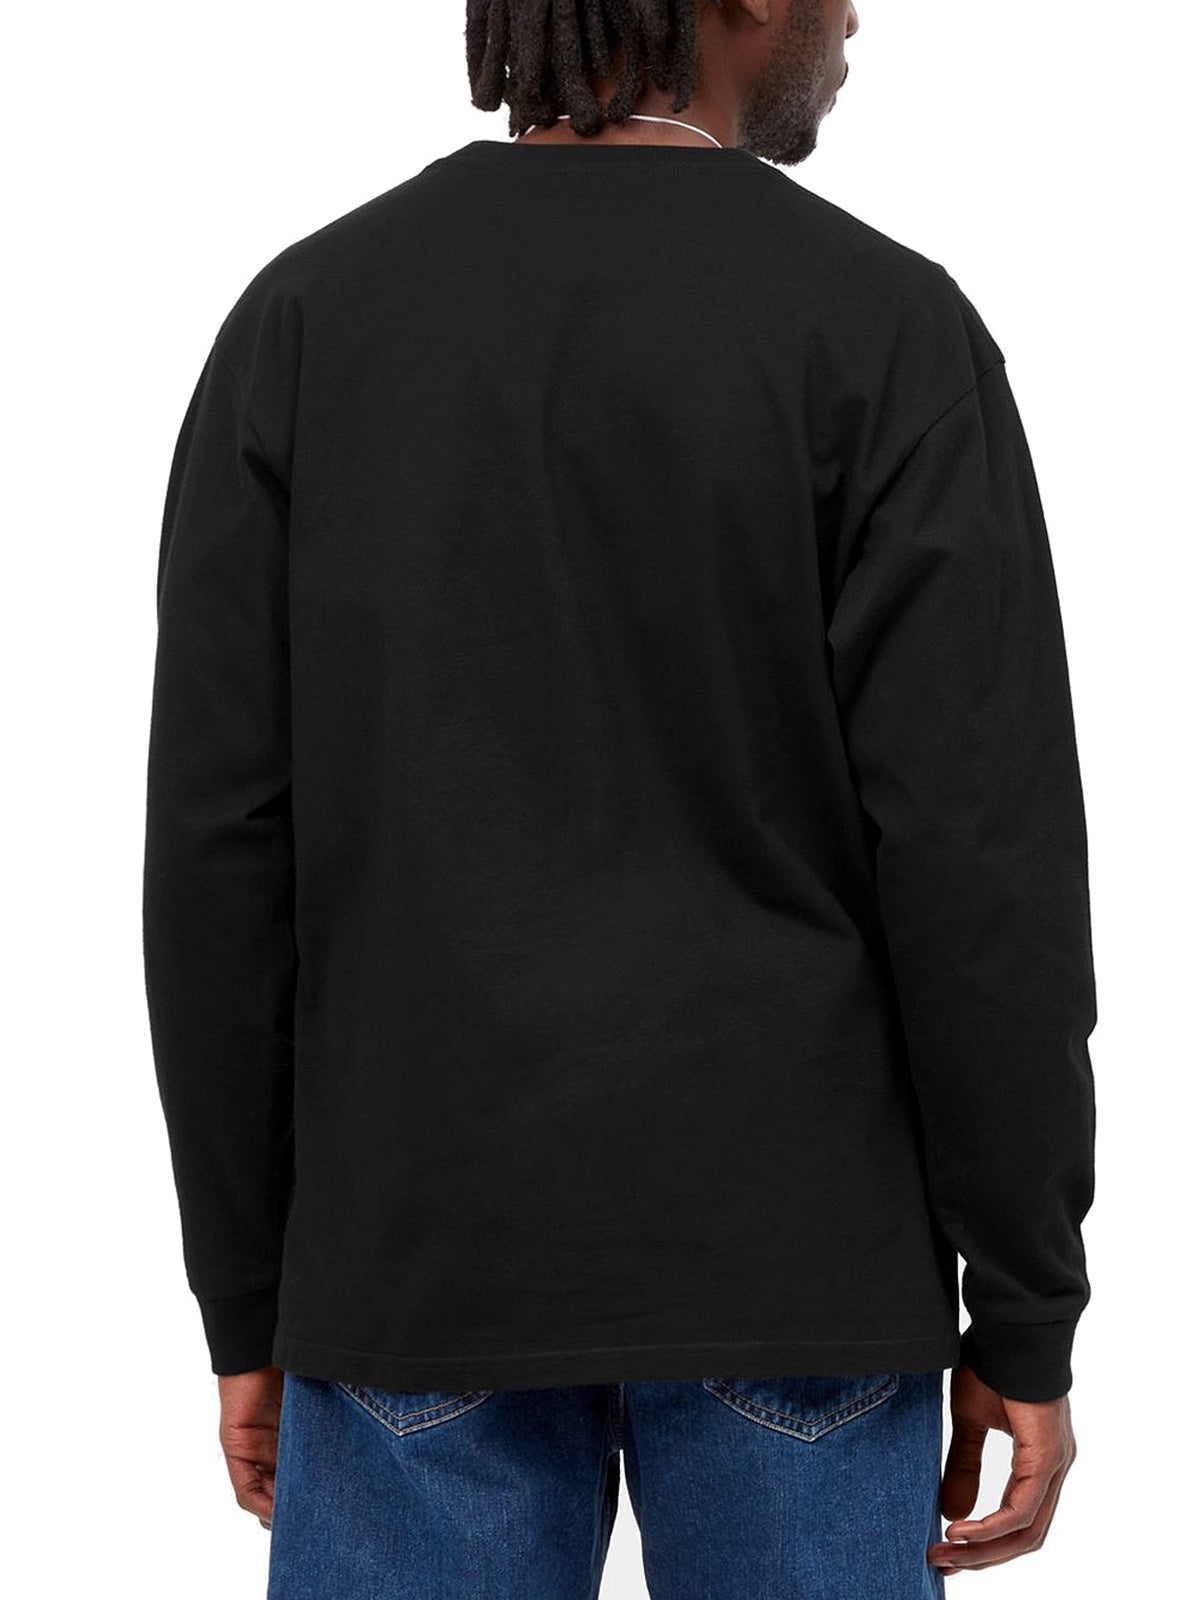 T-shirt Uomo Carhartt Wip - L/S Chase T-Shirt - Nero